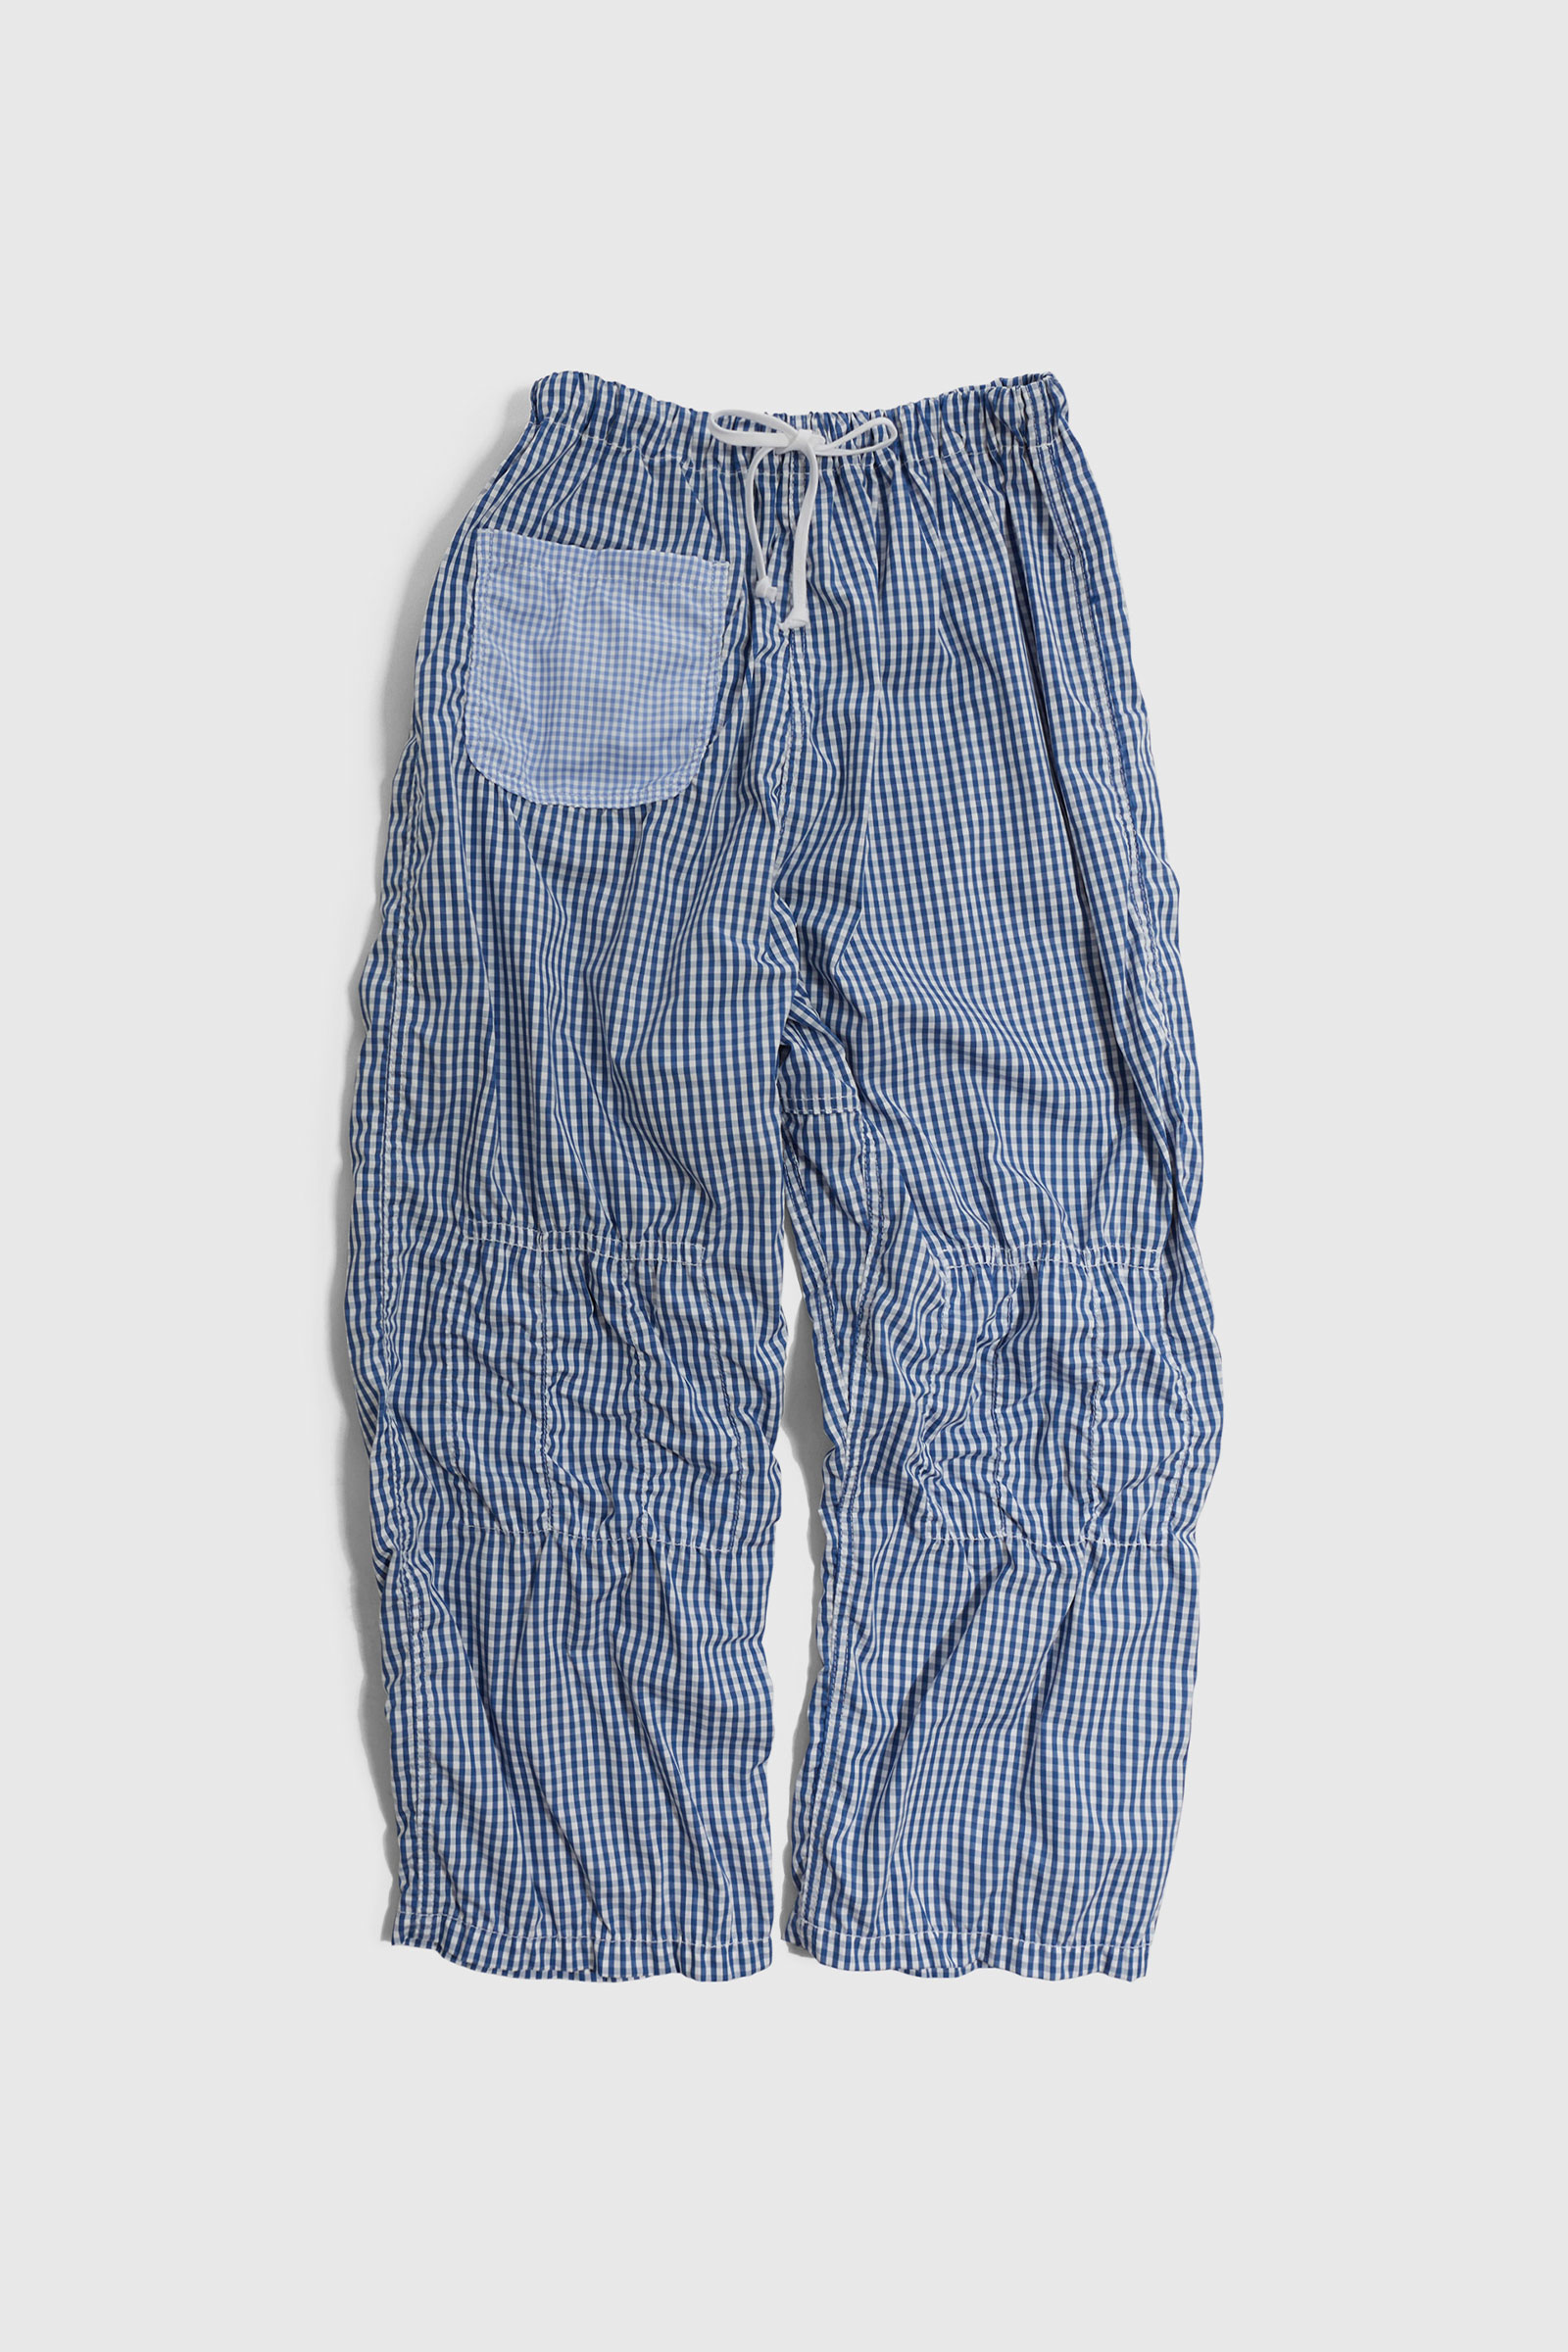 Comme des Garçons Tao Ladies' Pants Pattern | WoodWood.com